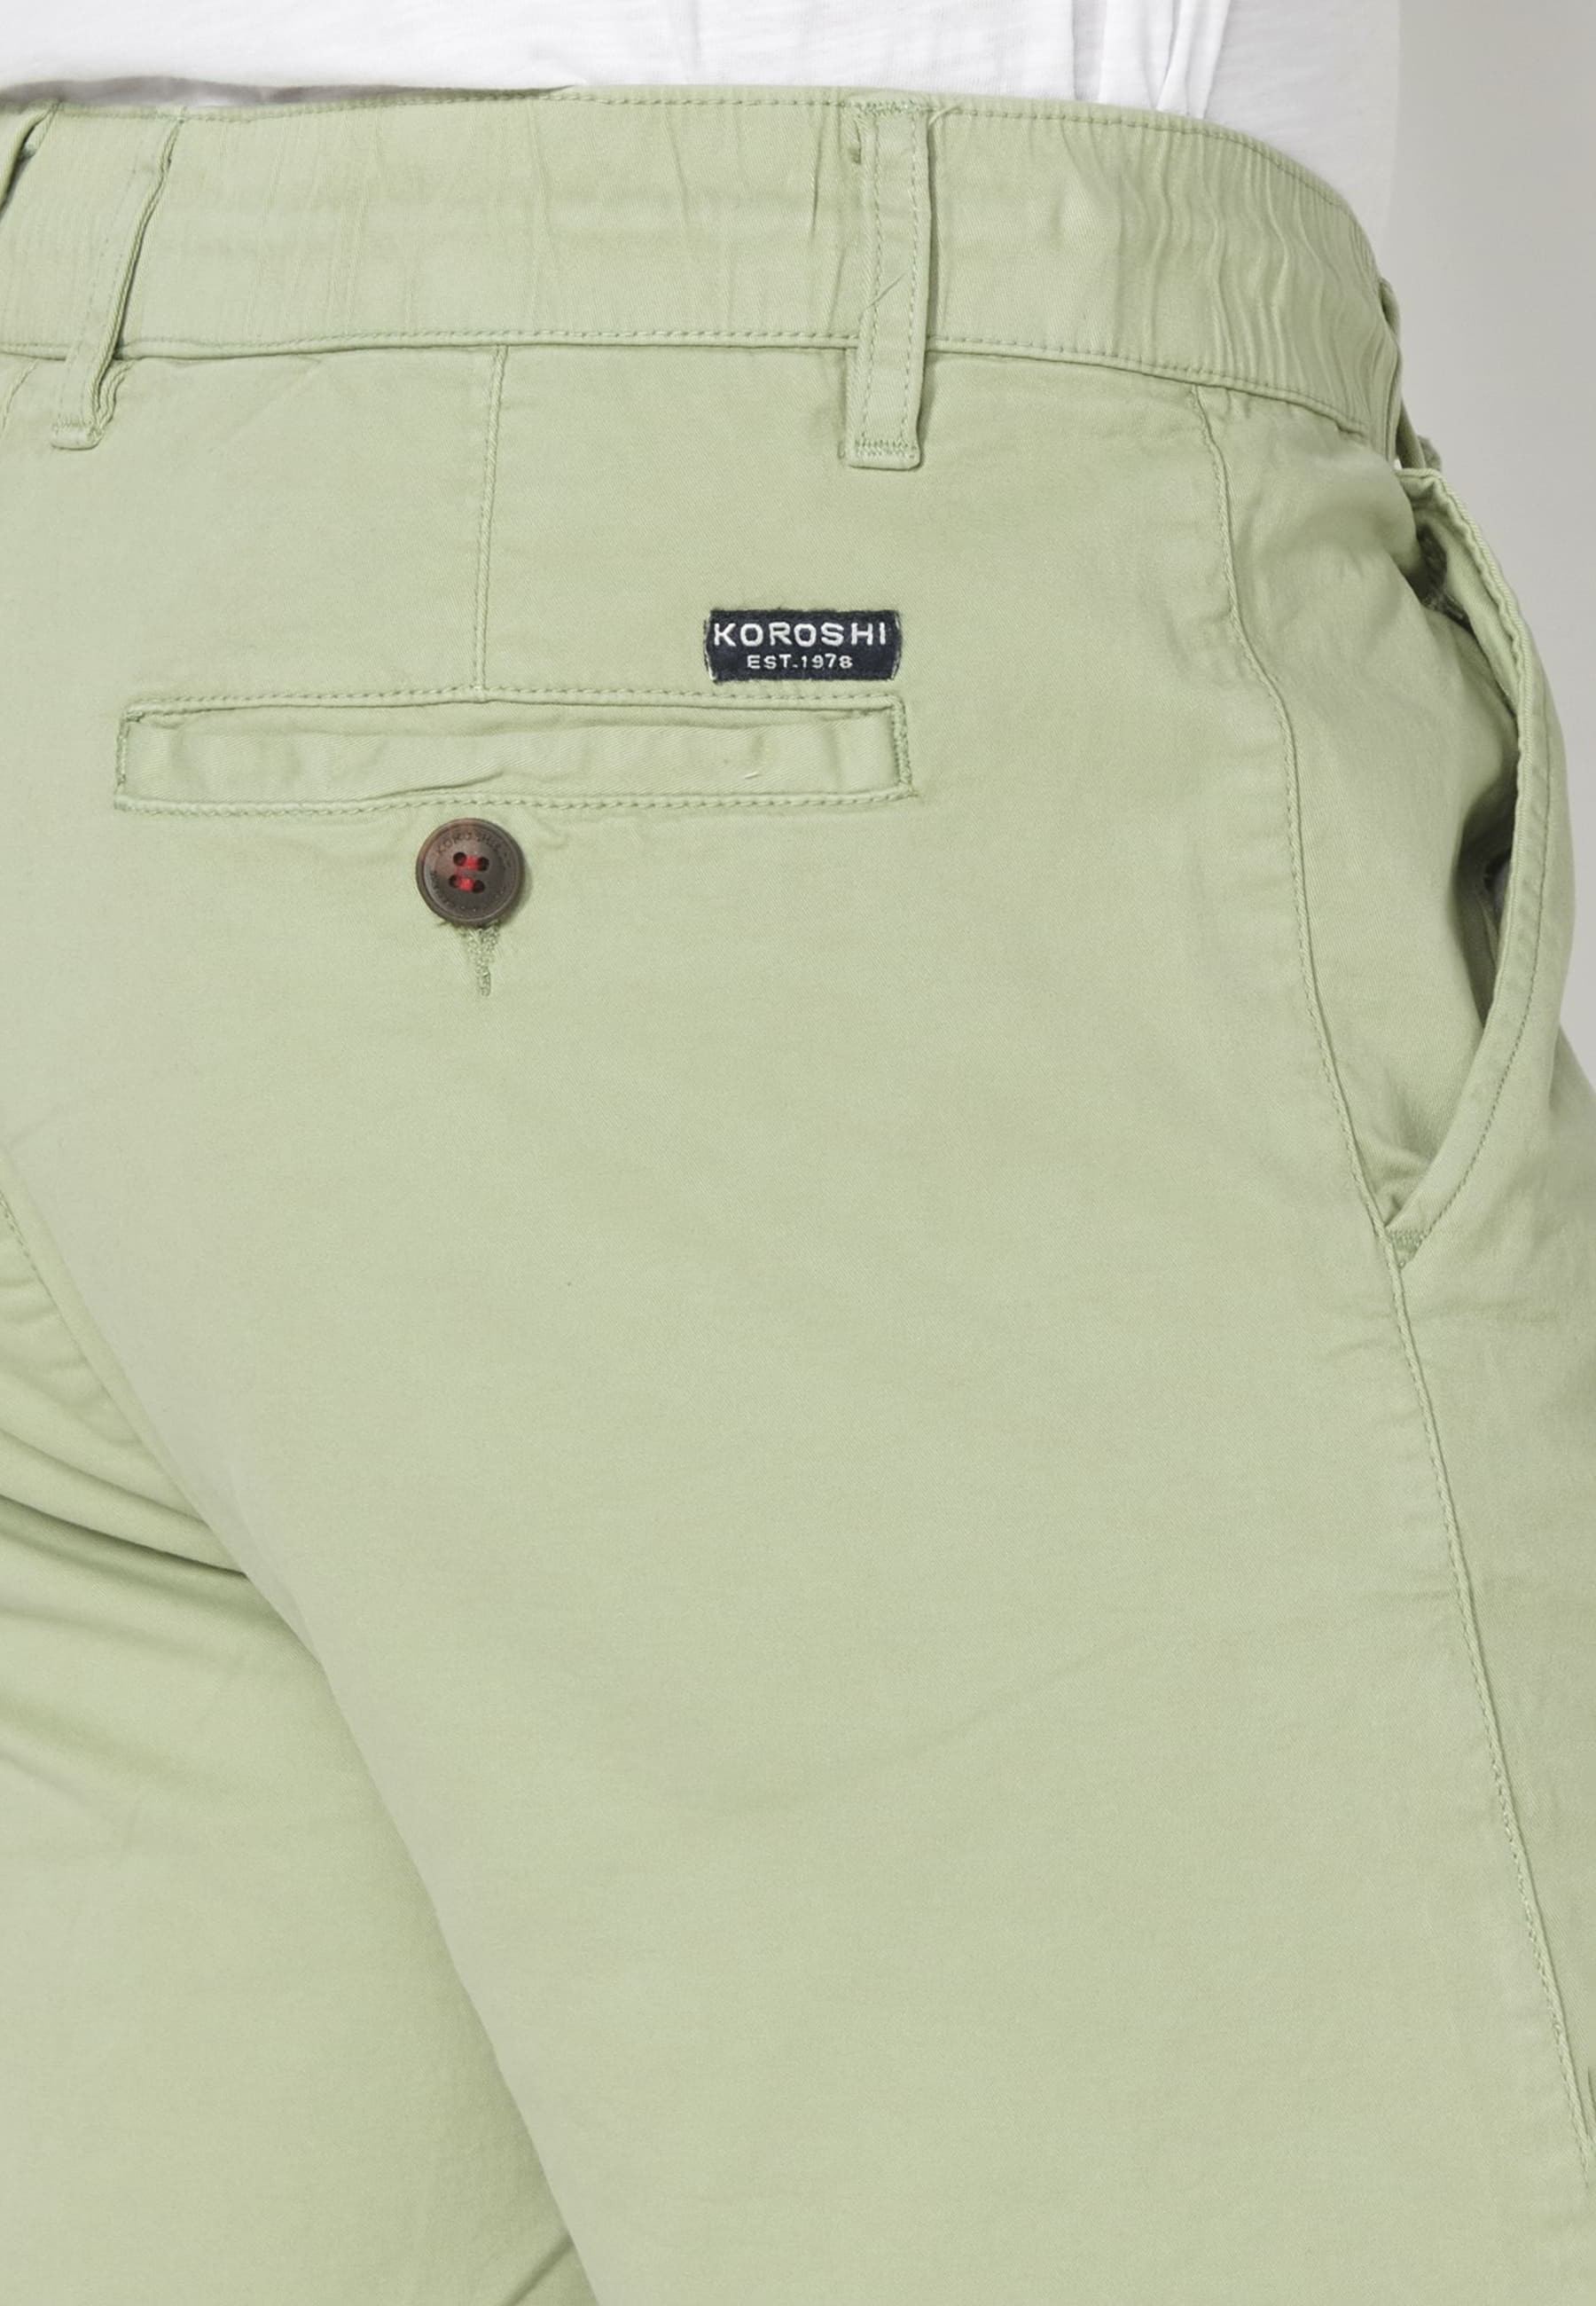 Pantalón corto Bermuda Vaquera Stretch Regular color Verde para Hombre